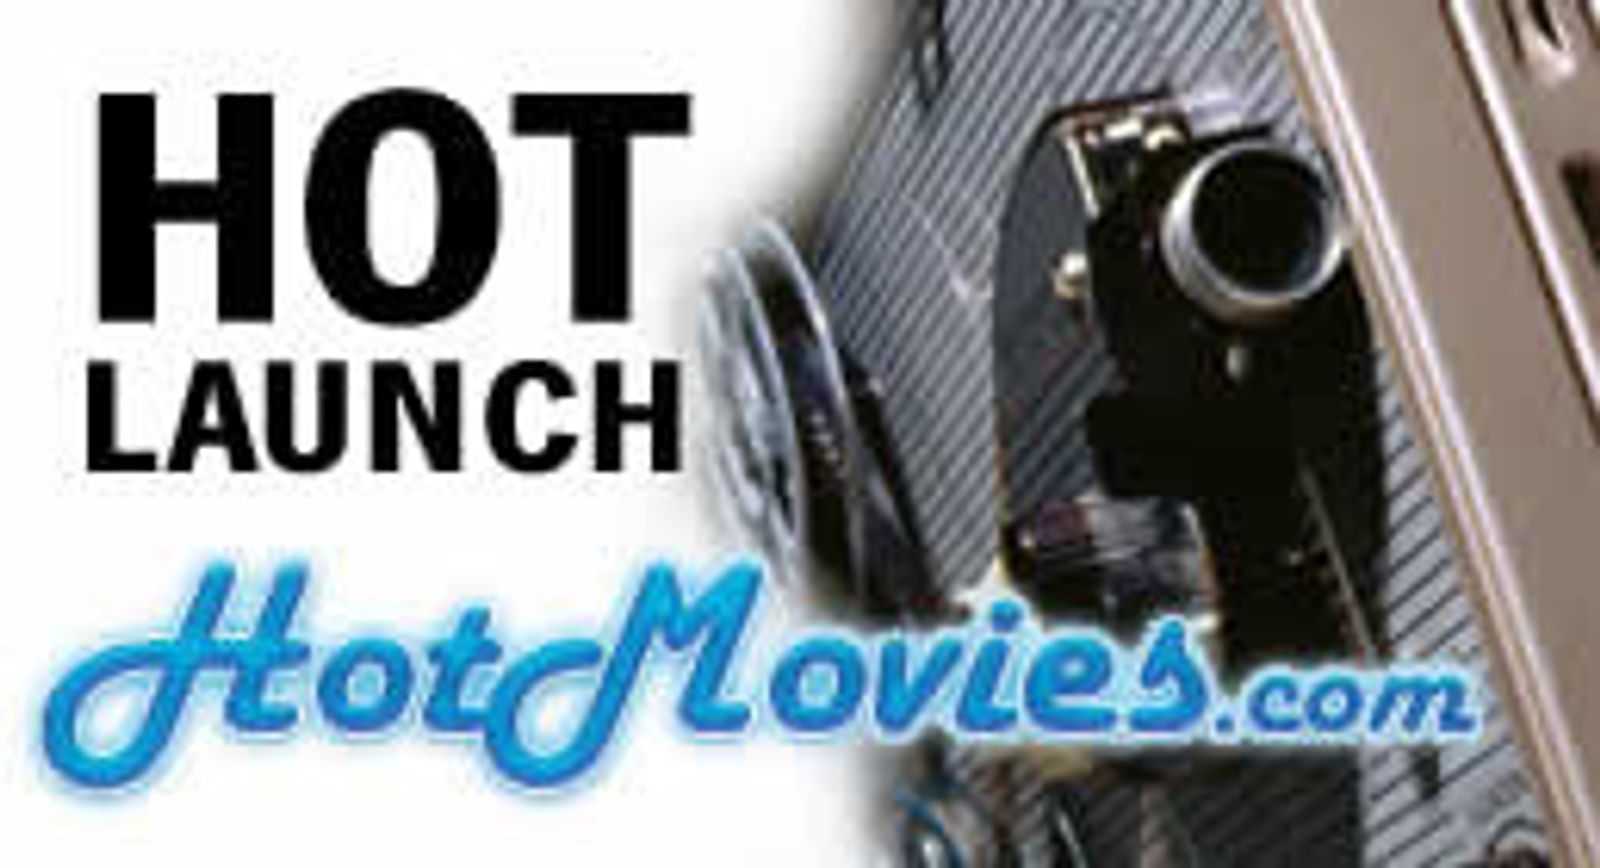 HotMovies.com Had Hot Launch